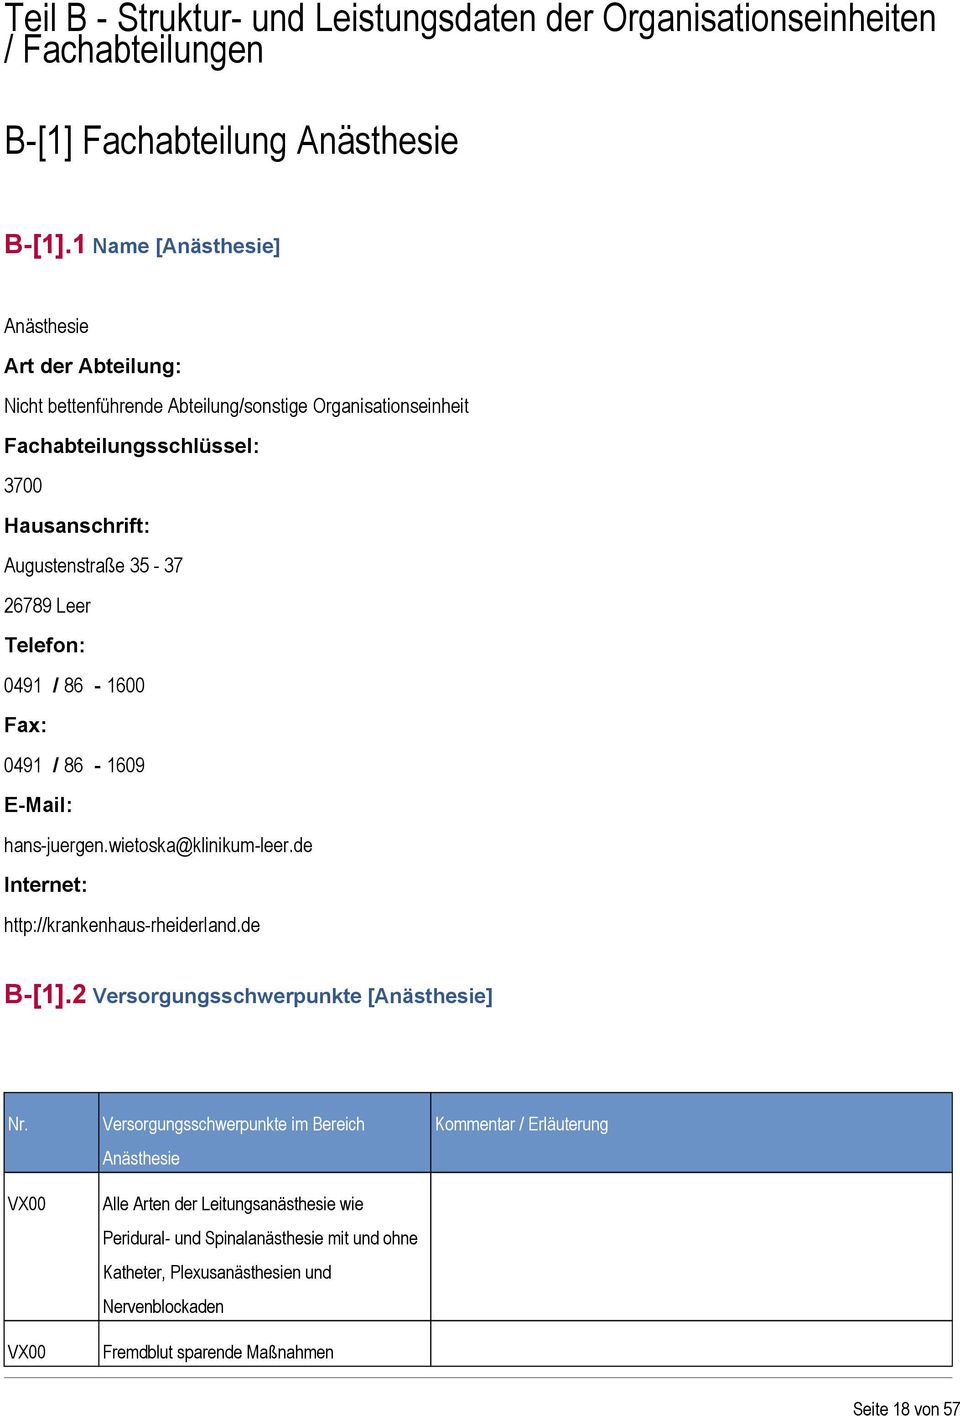 Leer Telefon: 0491 / 86-1600 Fax: 0491 / 86-1609 E-Mail: hans-juergen.wietoska@klinikum-leer.de Internet: http://krankenhaus-rheiderland.de B-[1].